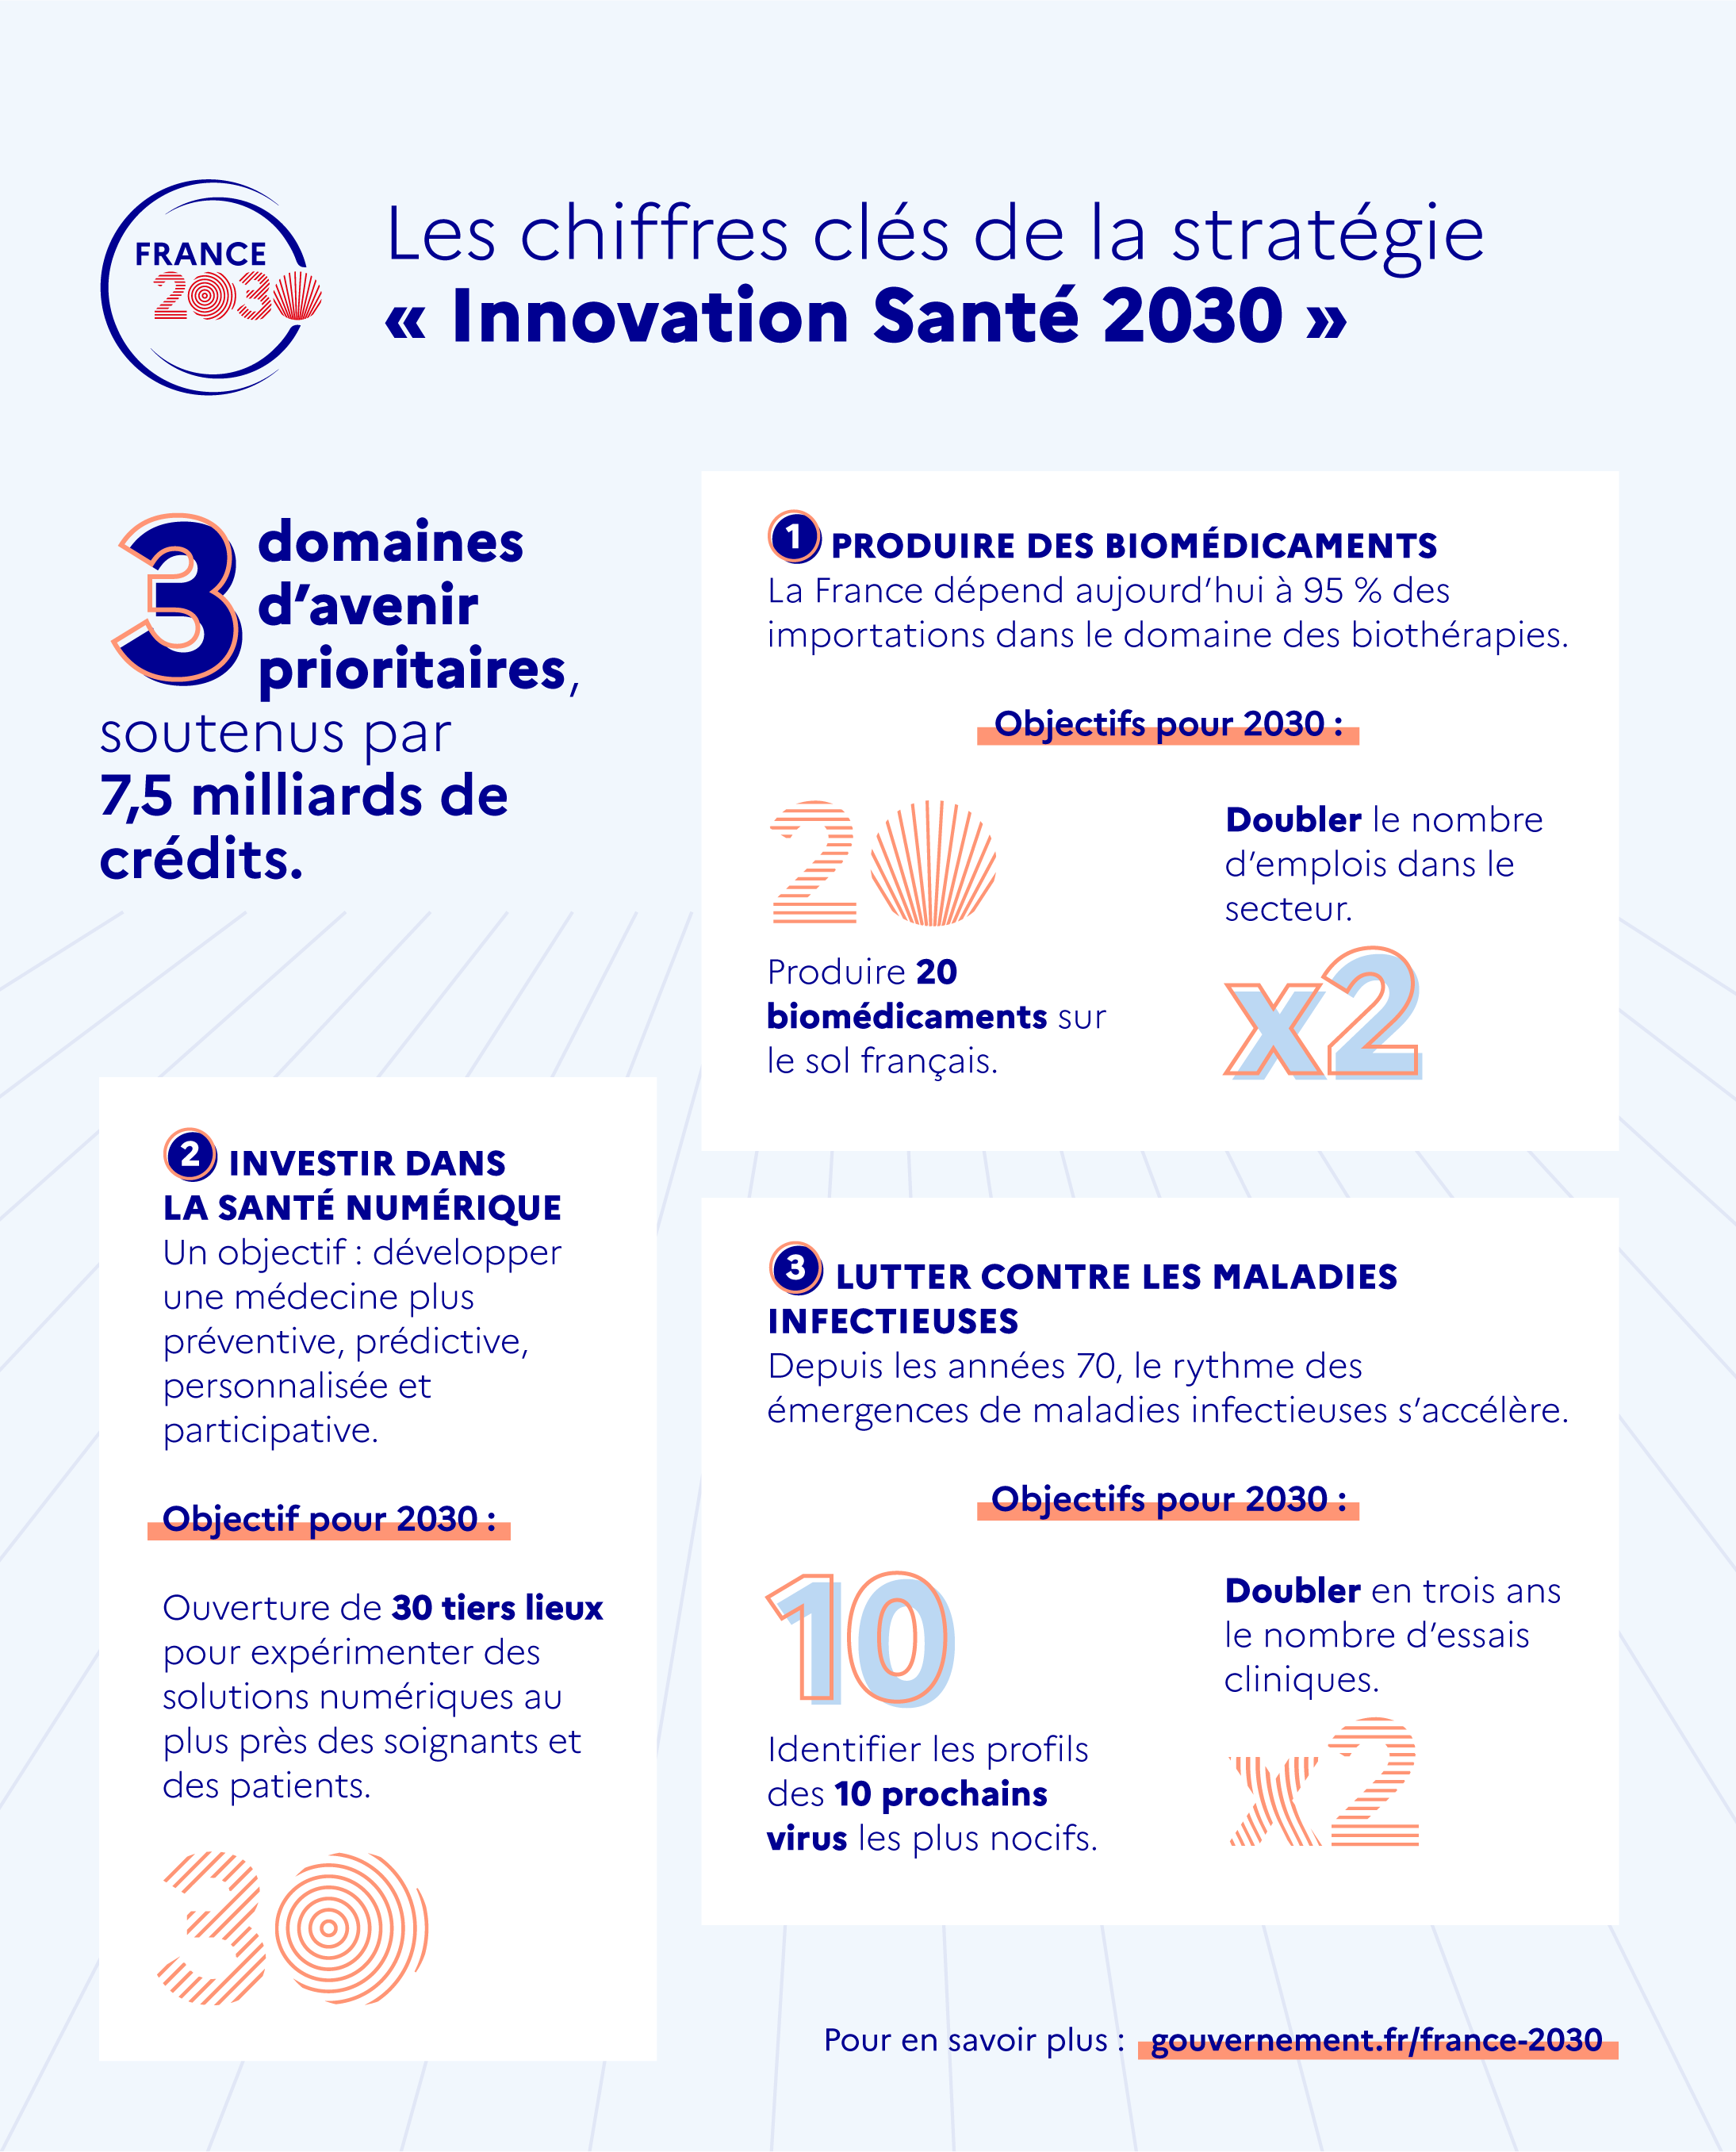 Les chiffres clés de la stratégie "Innovation Santé 2030"